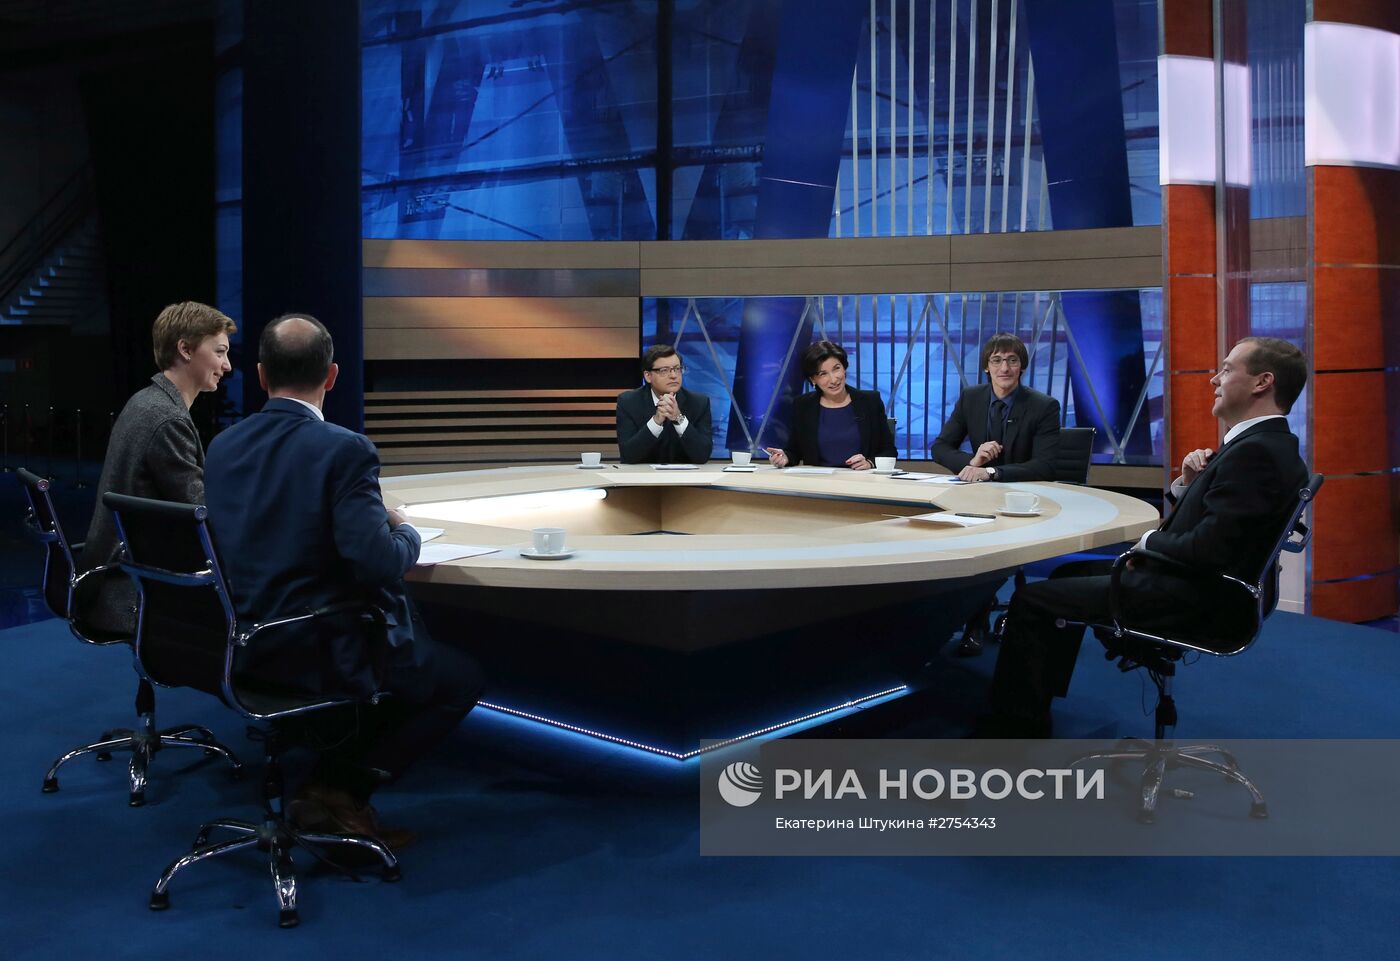 Интервью премьер-министра РФ Д.Медведева пяти российским телеканалам